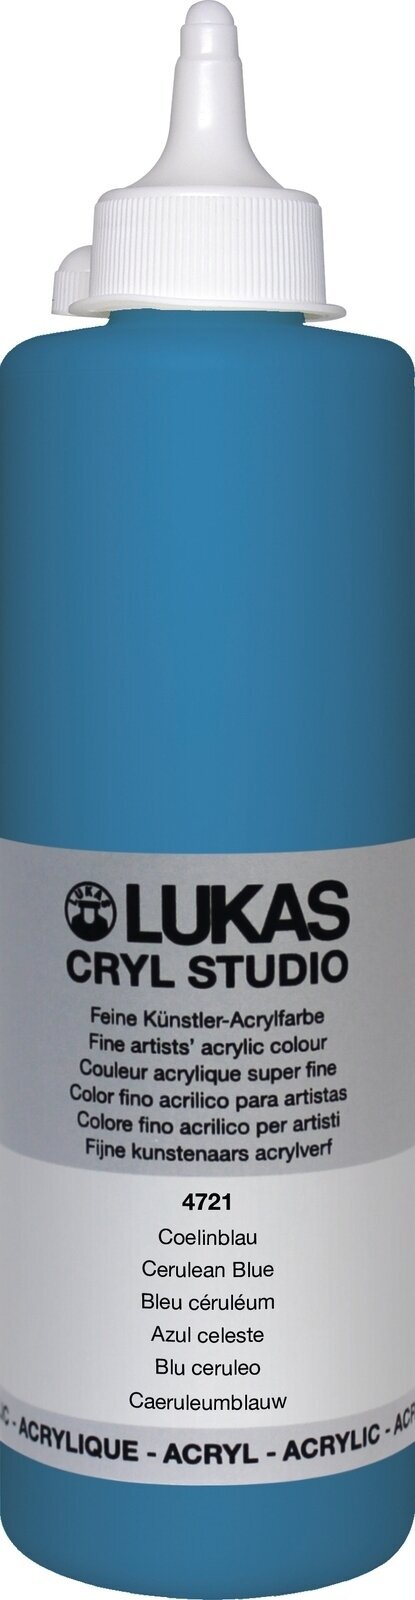 Acrylfarbe Lukas Cryl Studio Acrylic Paint Plastic Bottle Acrylfarbe Cerulean Blue 500 ml 1 Stck